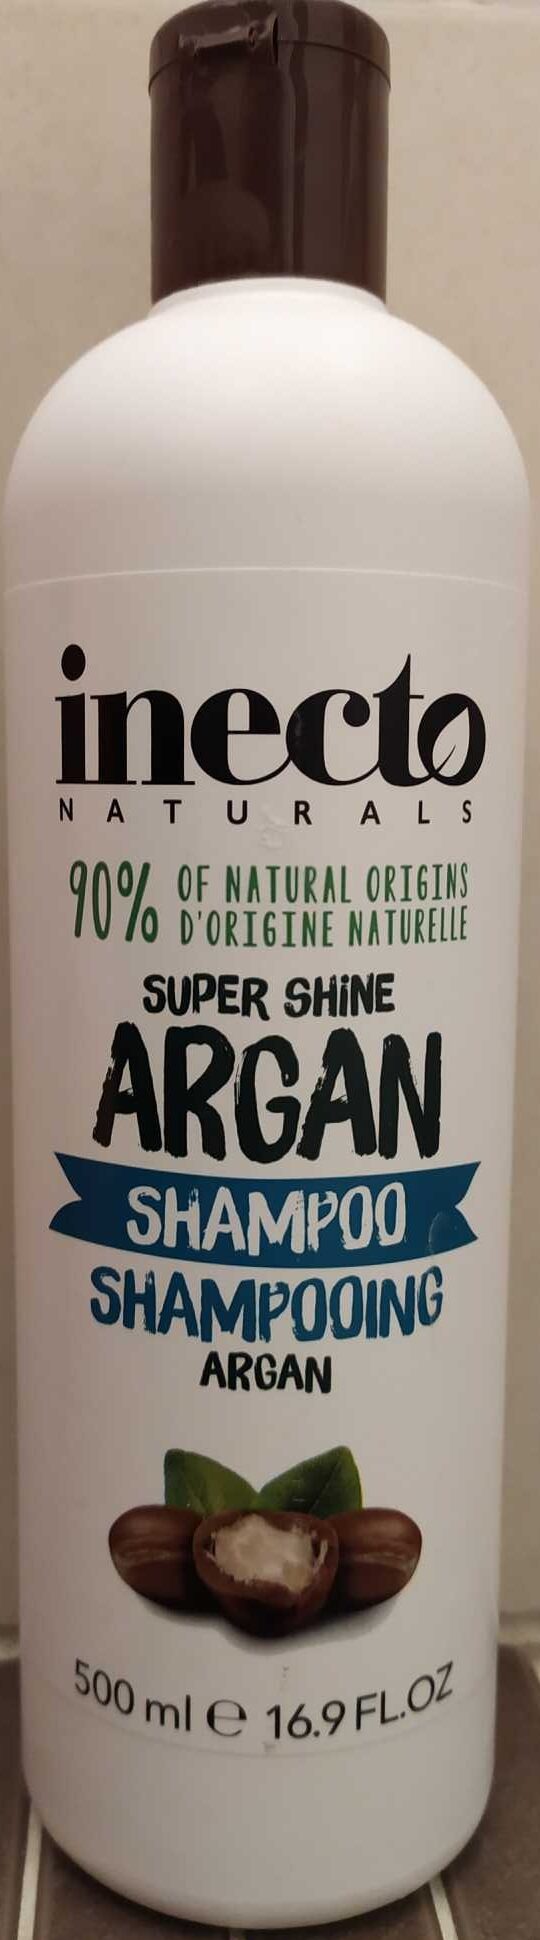 Shampoing ARGAN - Produkt - fr